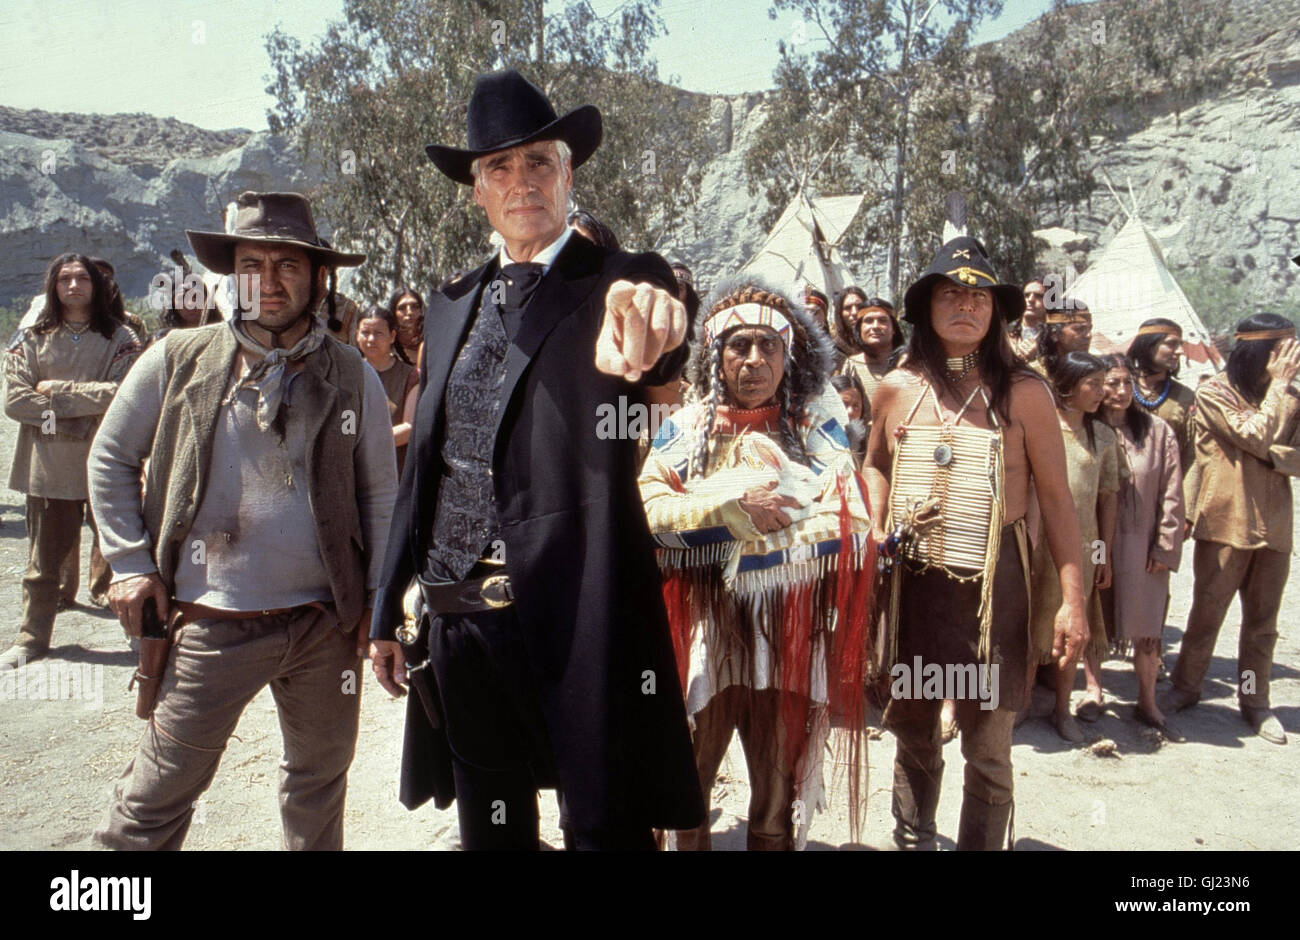 DER SCHUH DES MANIT1 D 2000 - Michael Bully Herbig Der Apachenhäuptling  Abahachi Blutsbruder sein und im Wilden Westen Ranger sorgen für Frieden  und Gerechtigkeit. Abahachi Schoschonen nimmt bei den einen Kredit